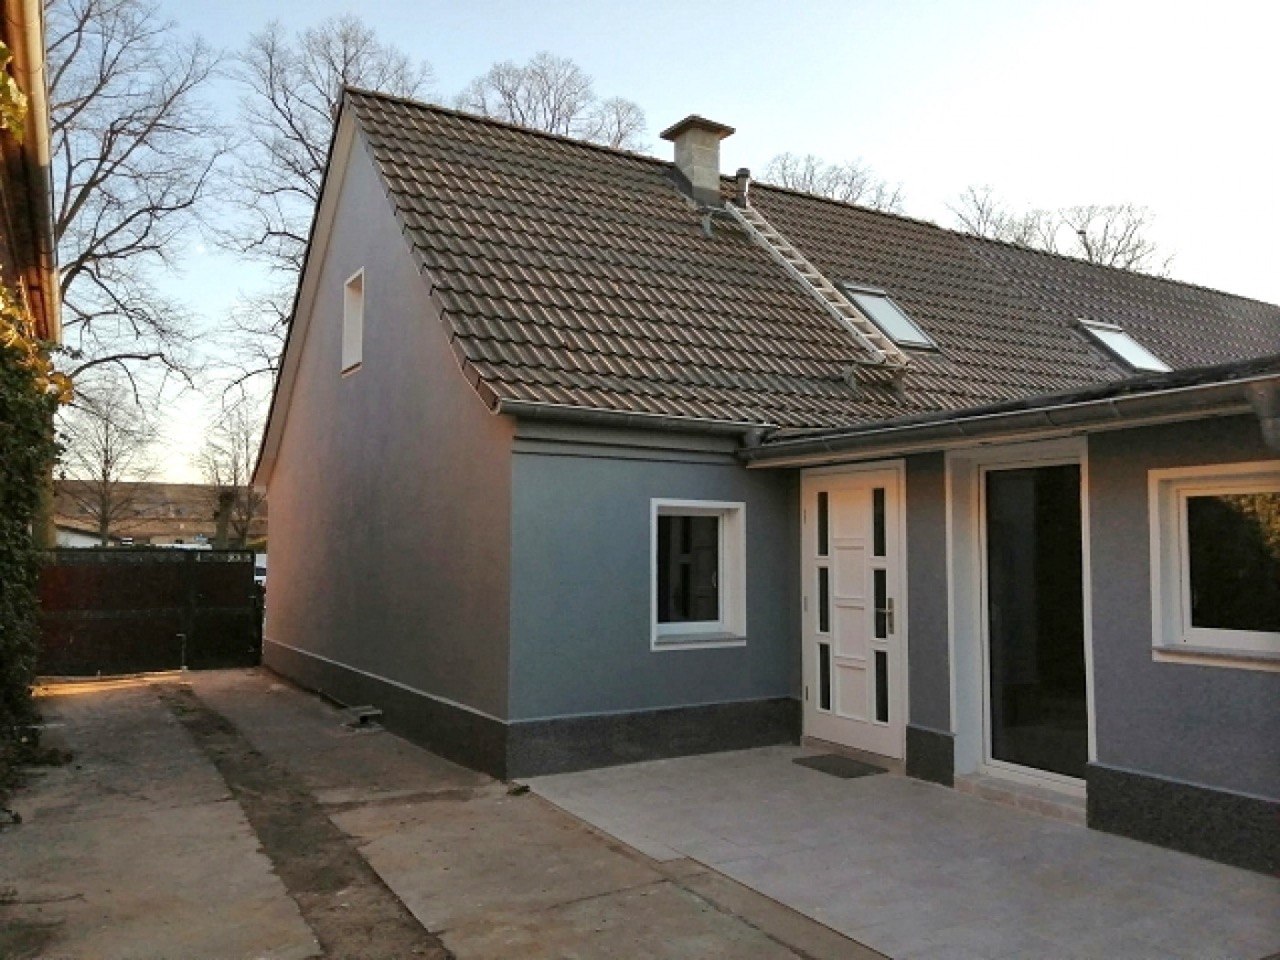 Sanierung eines Altbaus mit einer Wohnfläche von 130 m2 in Velten, Brandenburg